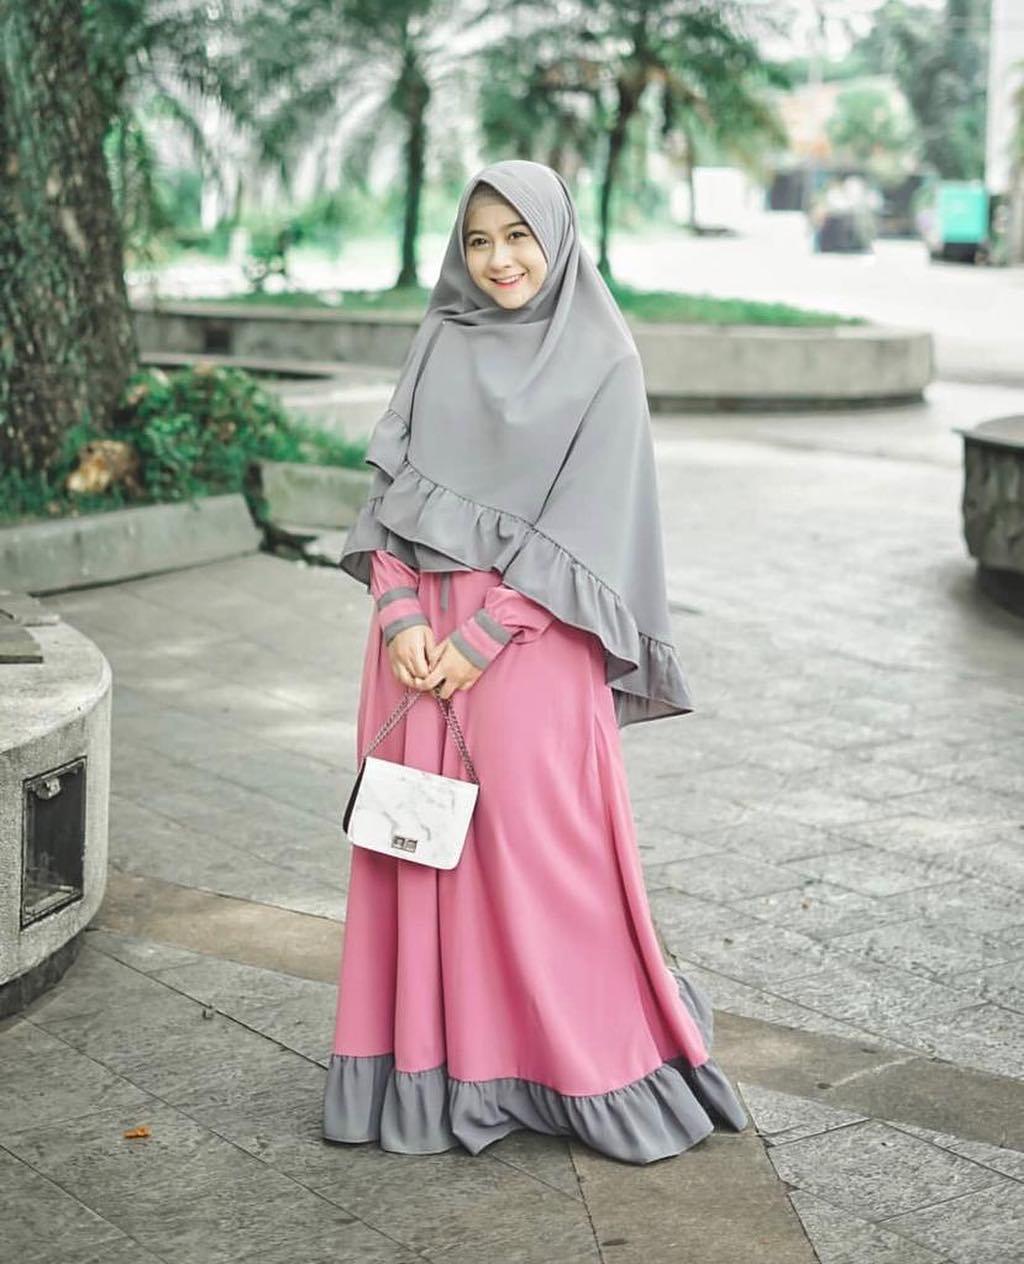 Baju Muslim Modern INARA SYARI Bahan MOSSCRAPE Dapat GAMIS + KHIMAR Gamis Syari Set Khimar Terbaru 2021 Gamis Syari Remaja Simple Gamis Syar’i Wanita Jumbo BEST SELLER